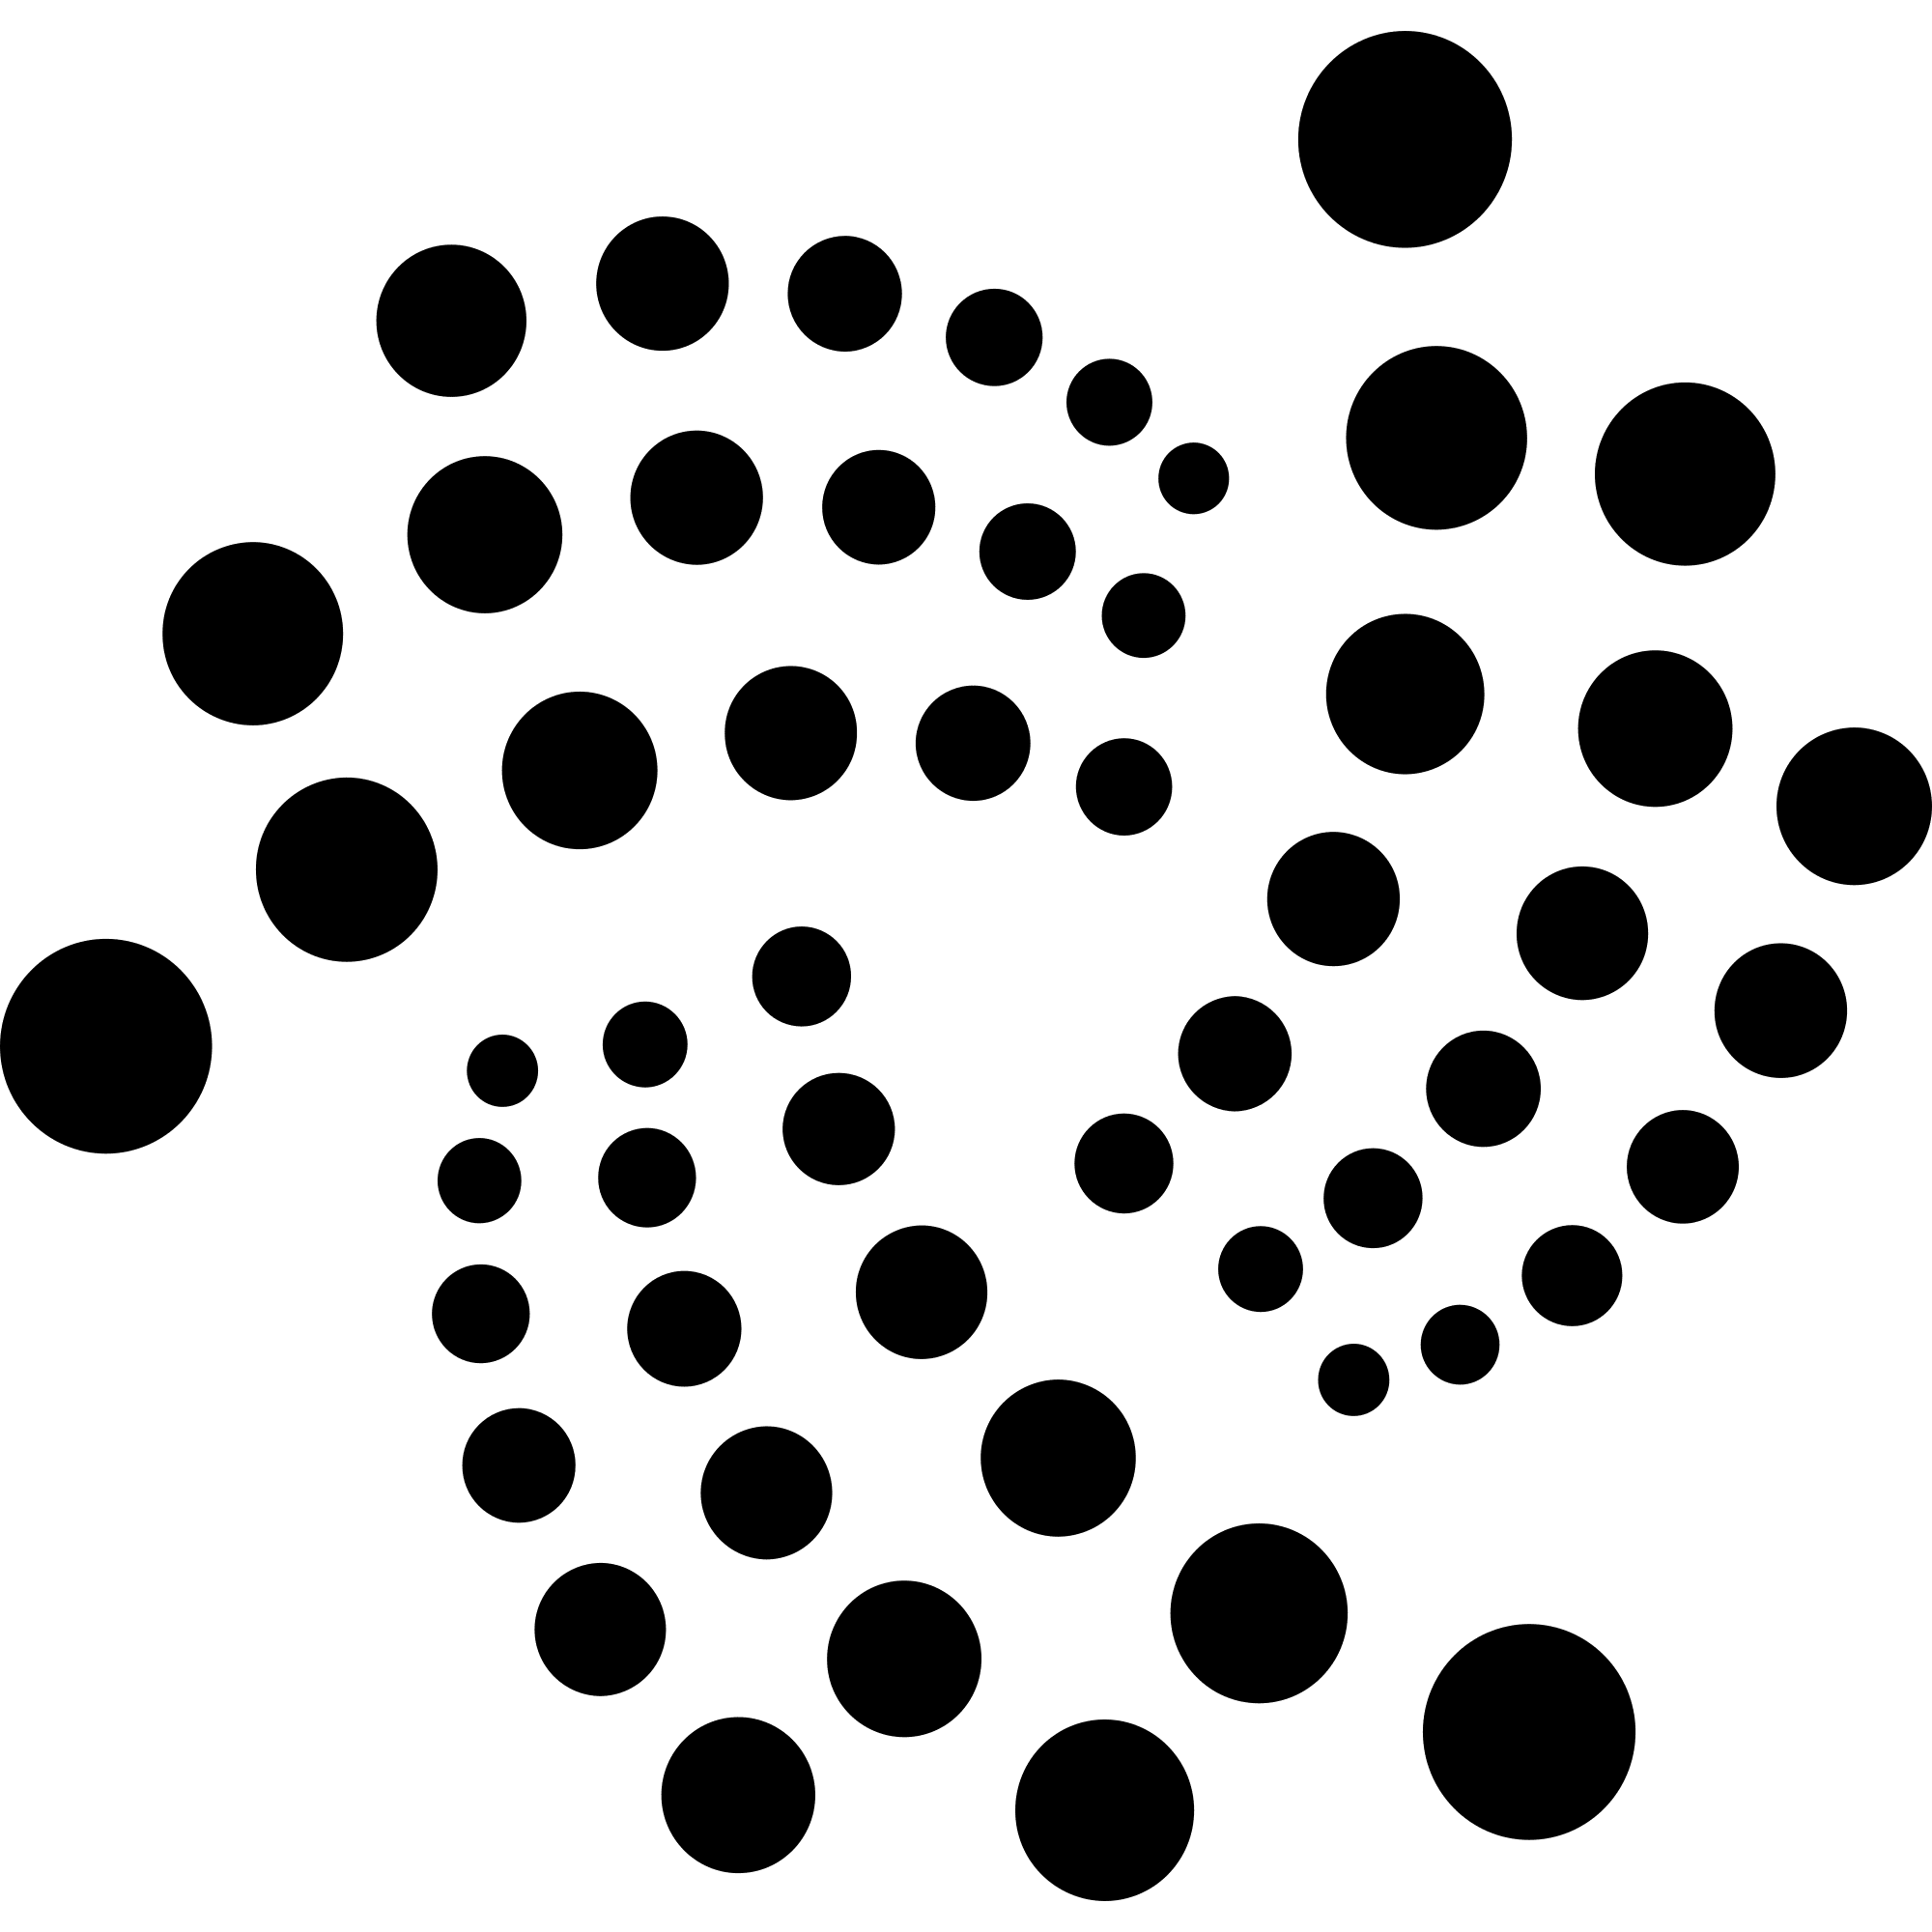 IOTA logo in png format